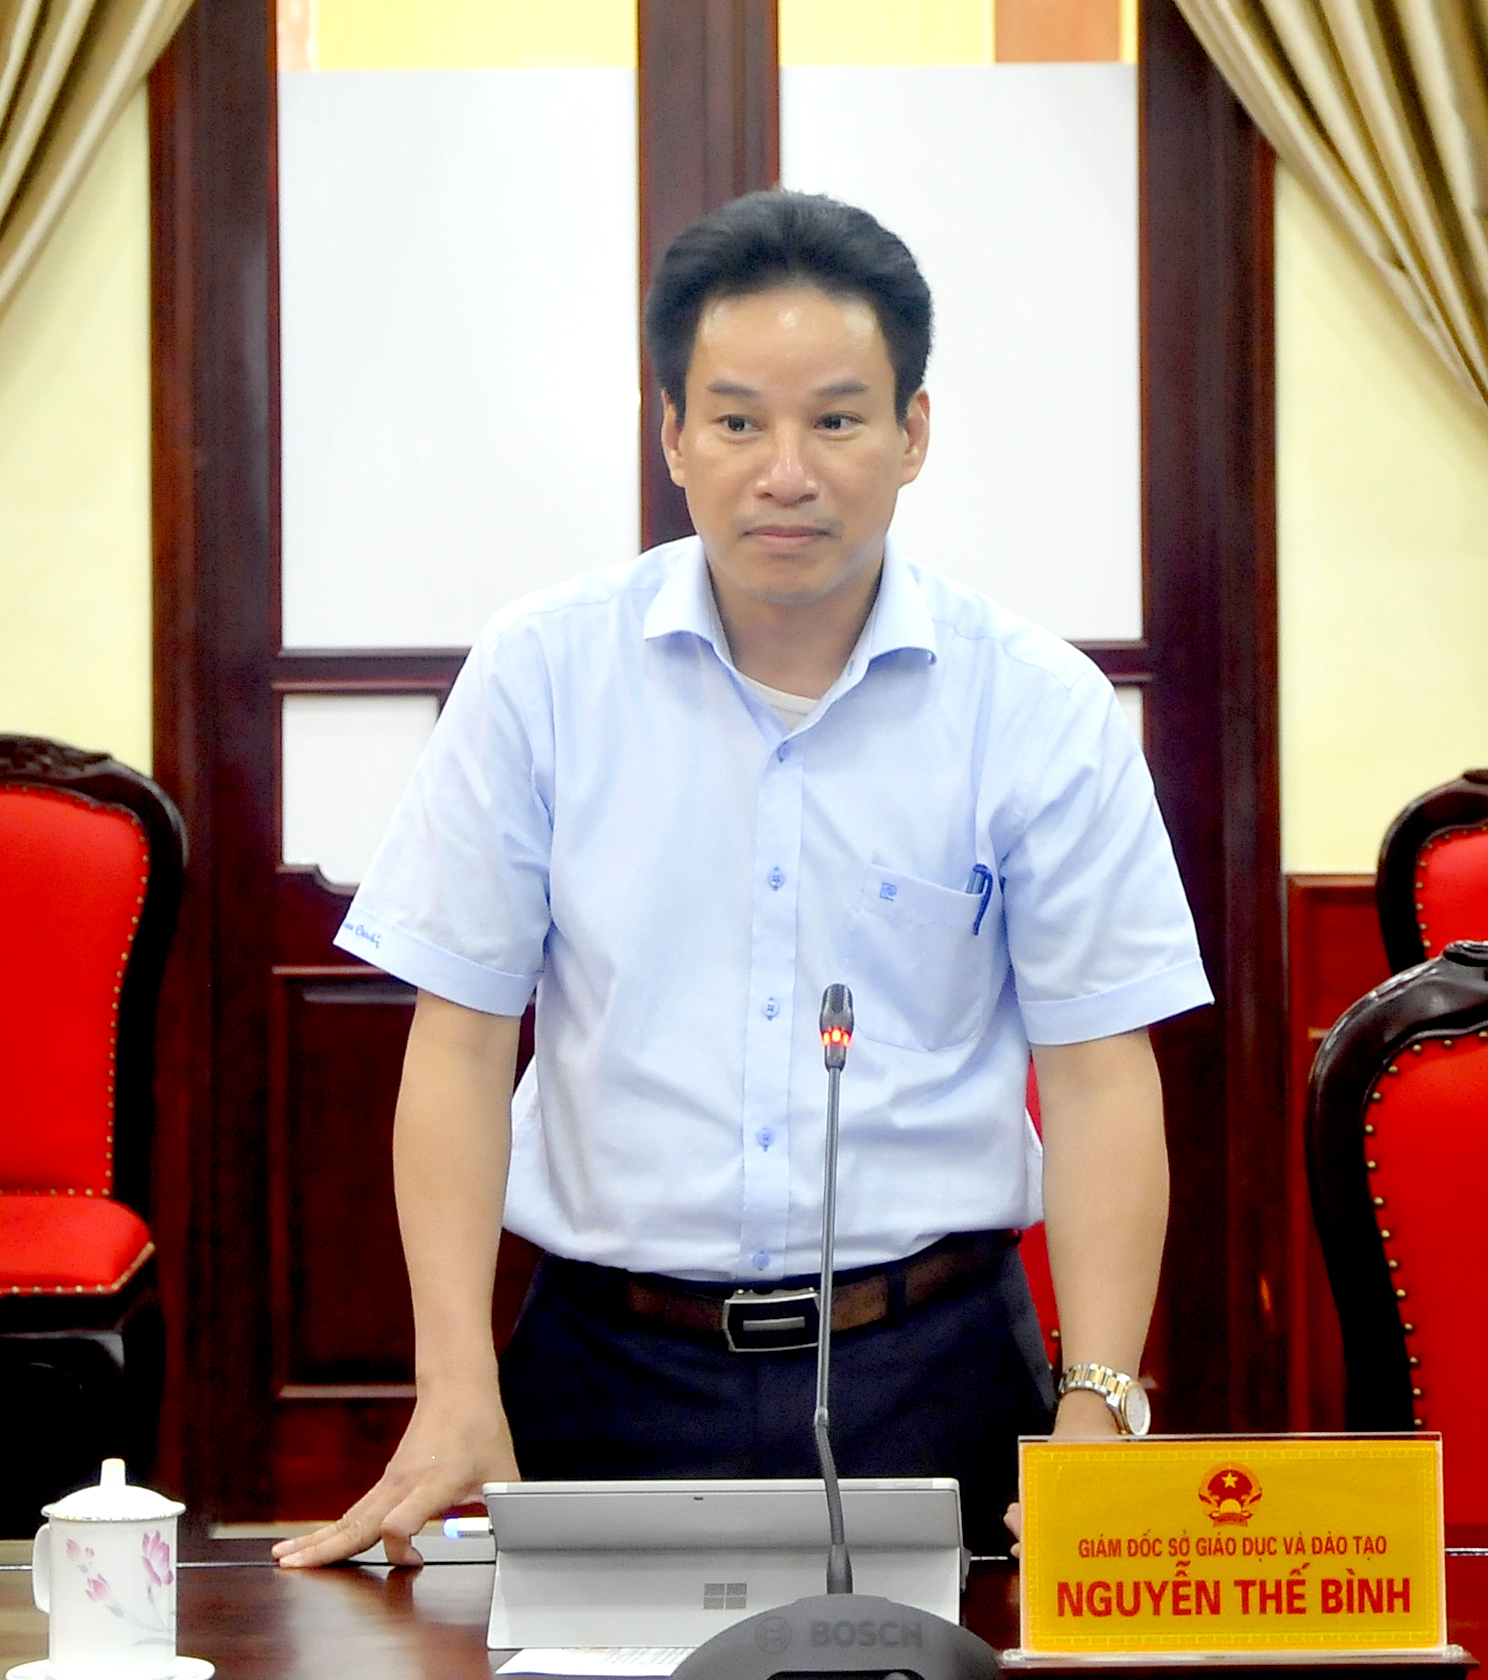 Giám đốc Sở Giáo dục và Đào tạo Nguyễn Thế Bình báo cáo những khó khăn và đề xuất các giải pháp nâng cao chất lượng công tác giáo dục.